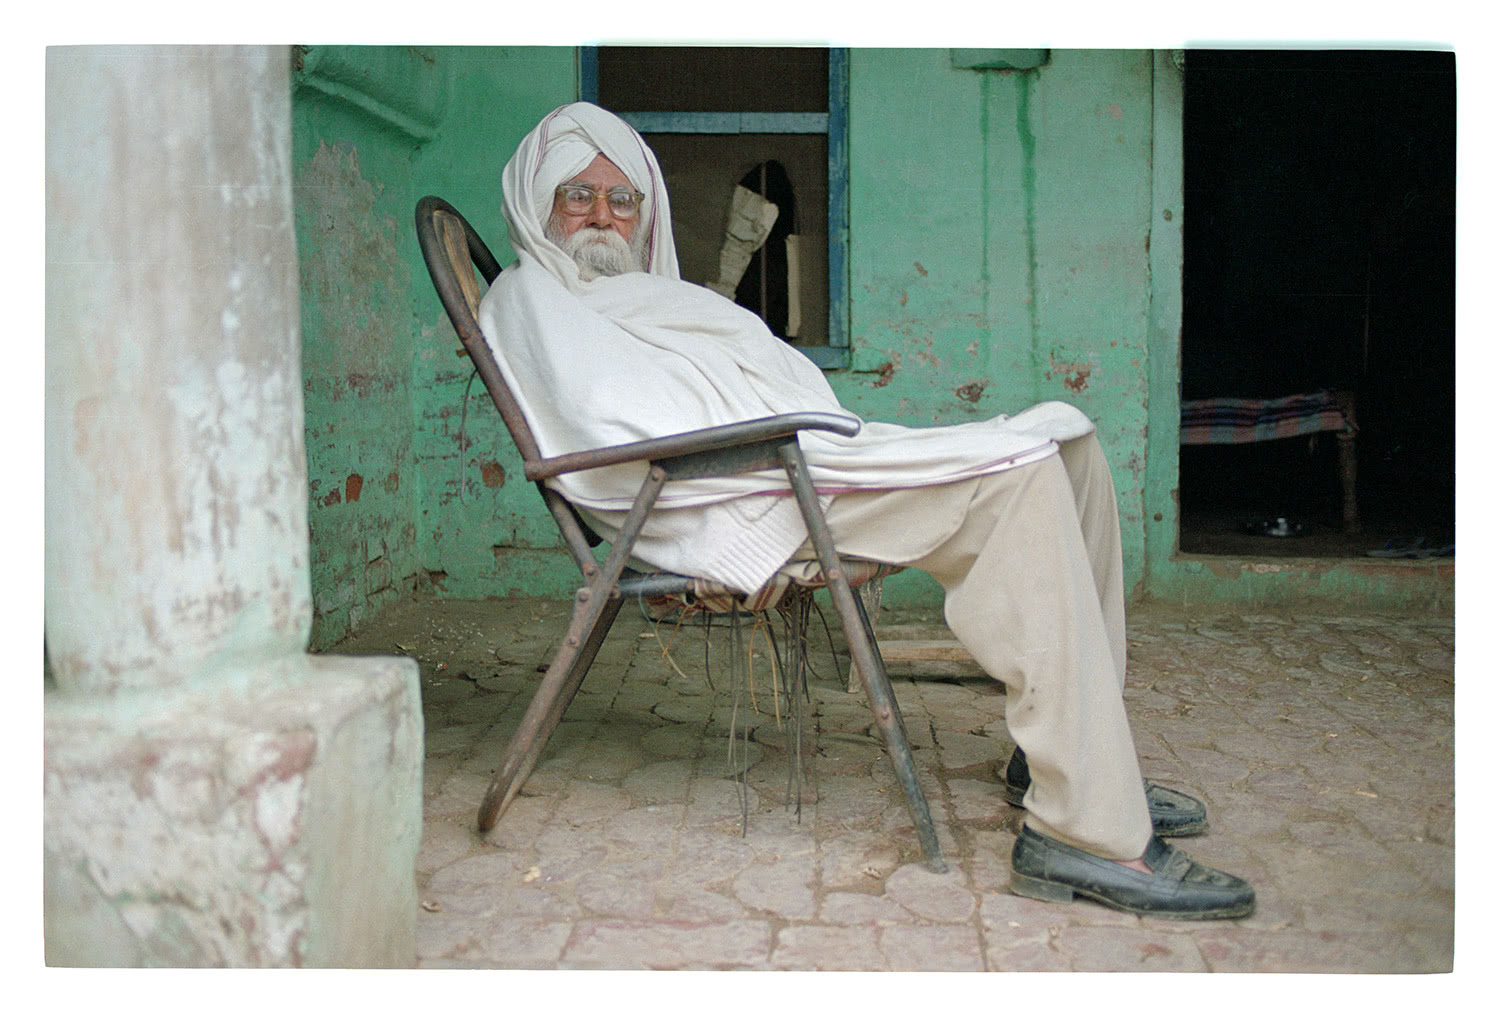 Old Punjab man in seat